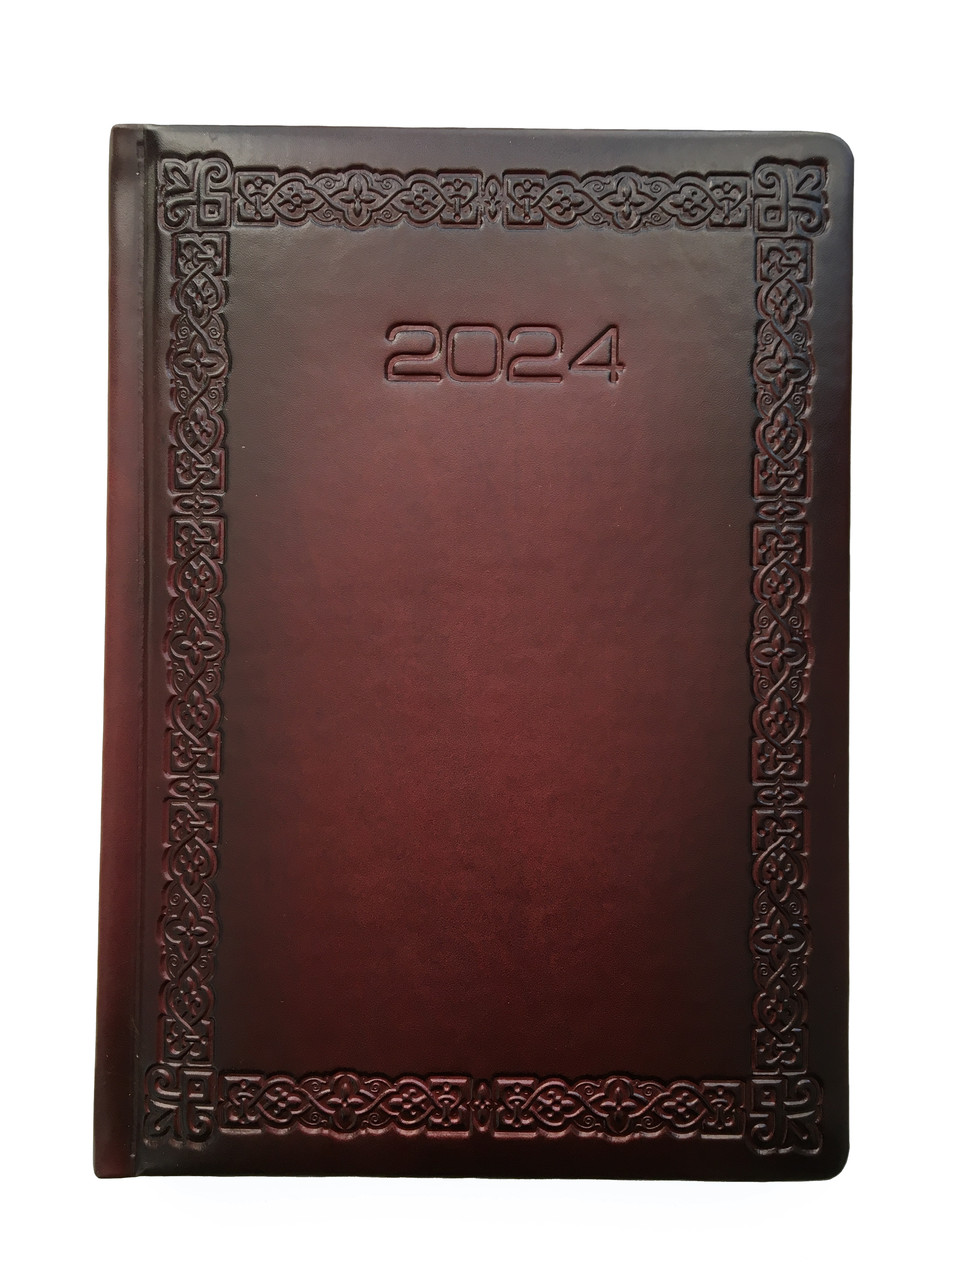 Щоденник датований 2024 рік, зріз блоку золото "Рамка Орнамент" бордовий А5, Бібльос, штучна шкіра